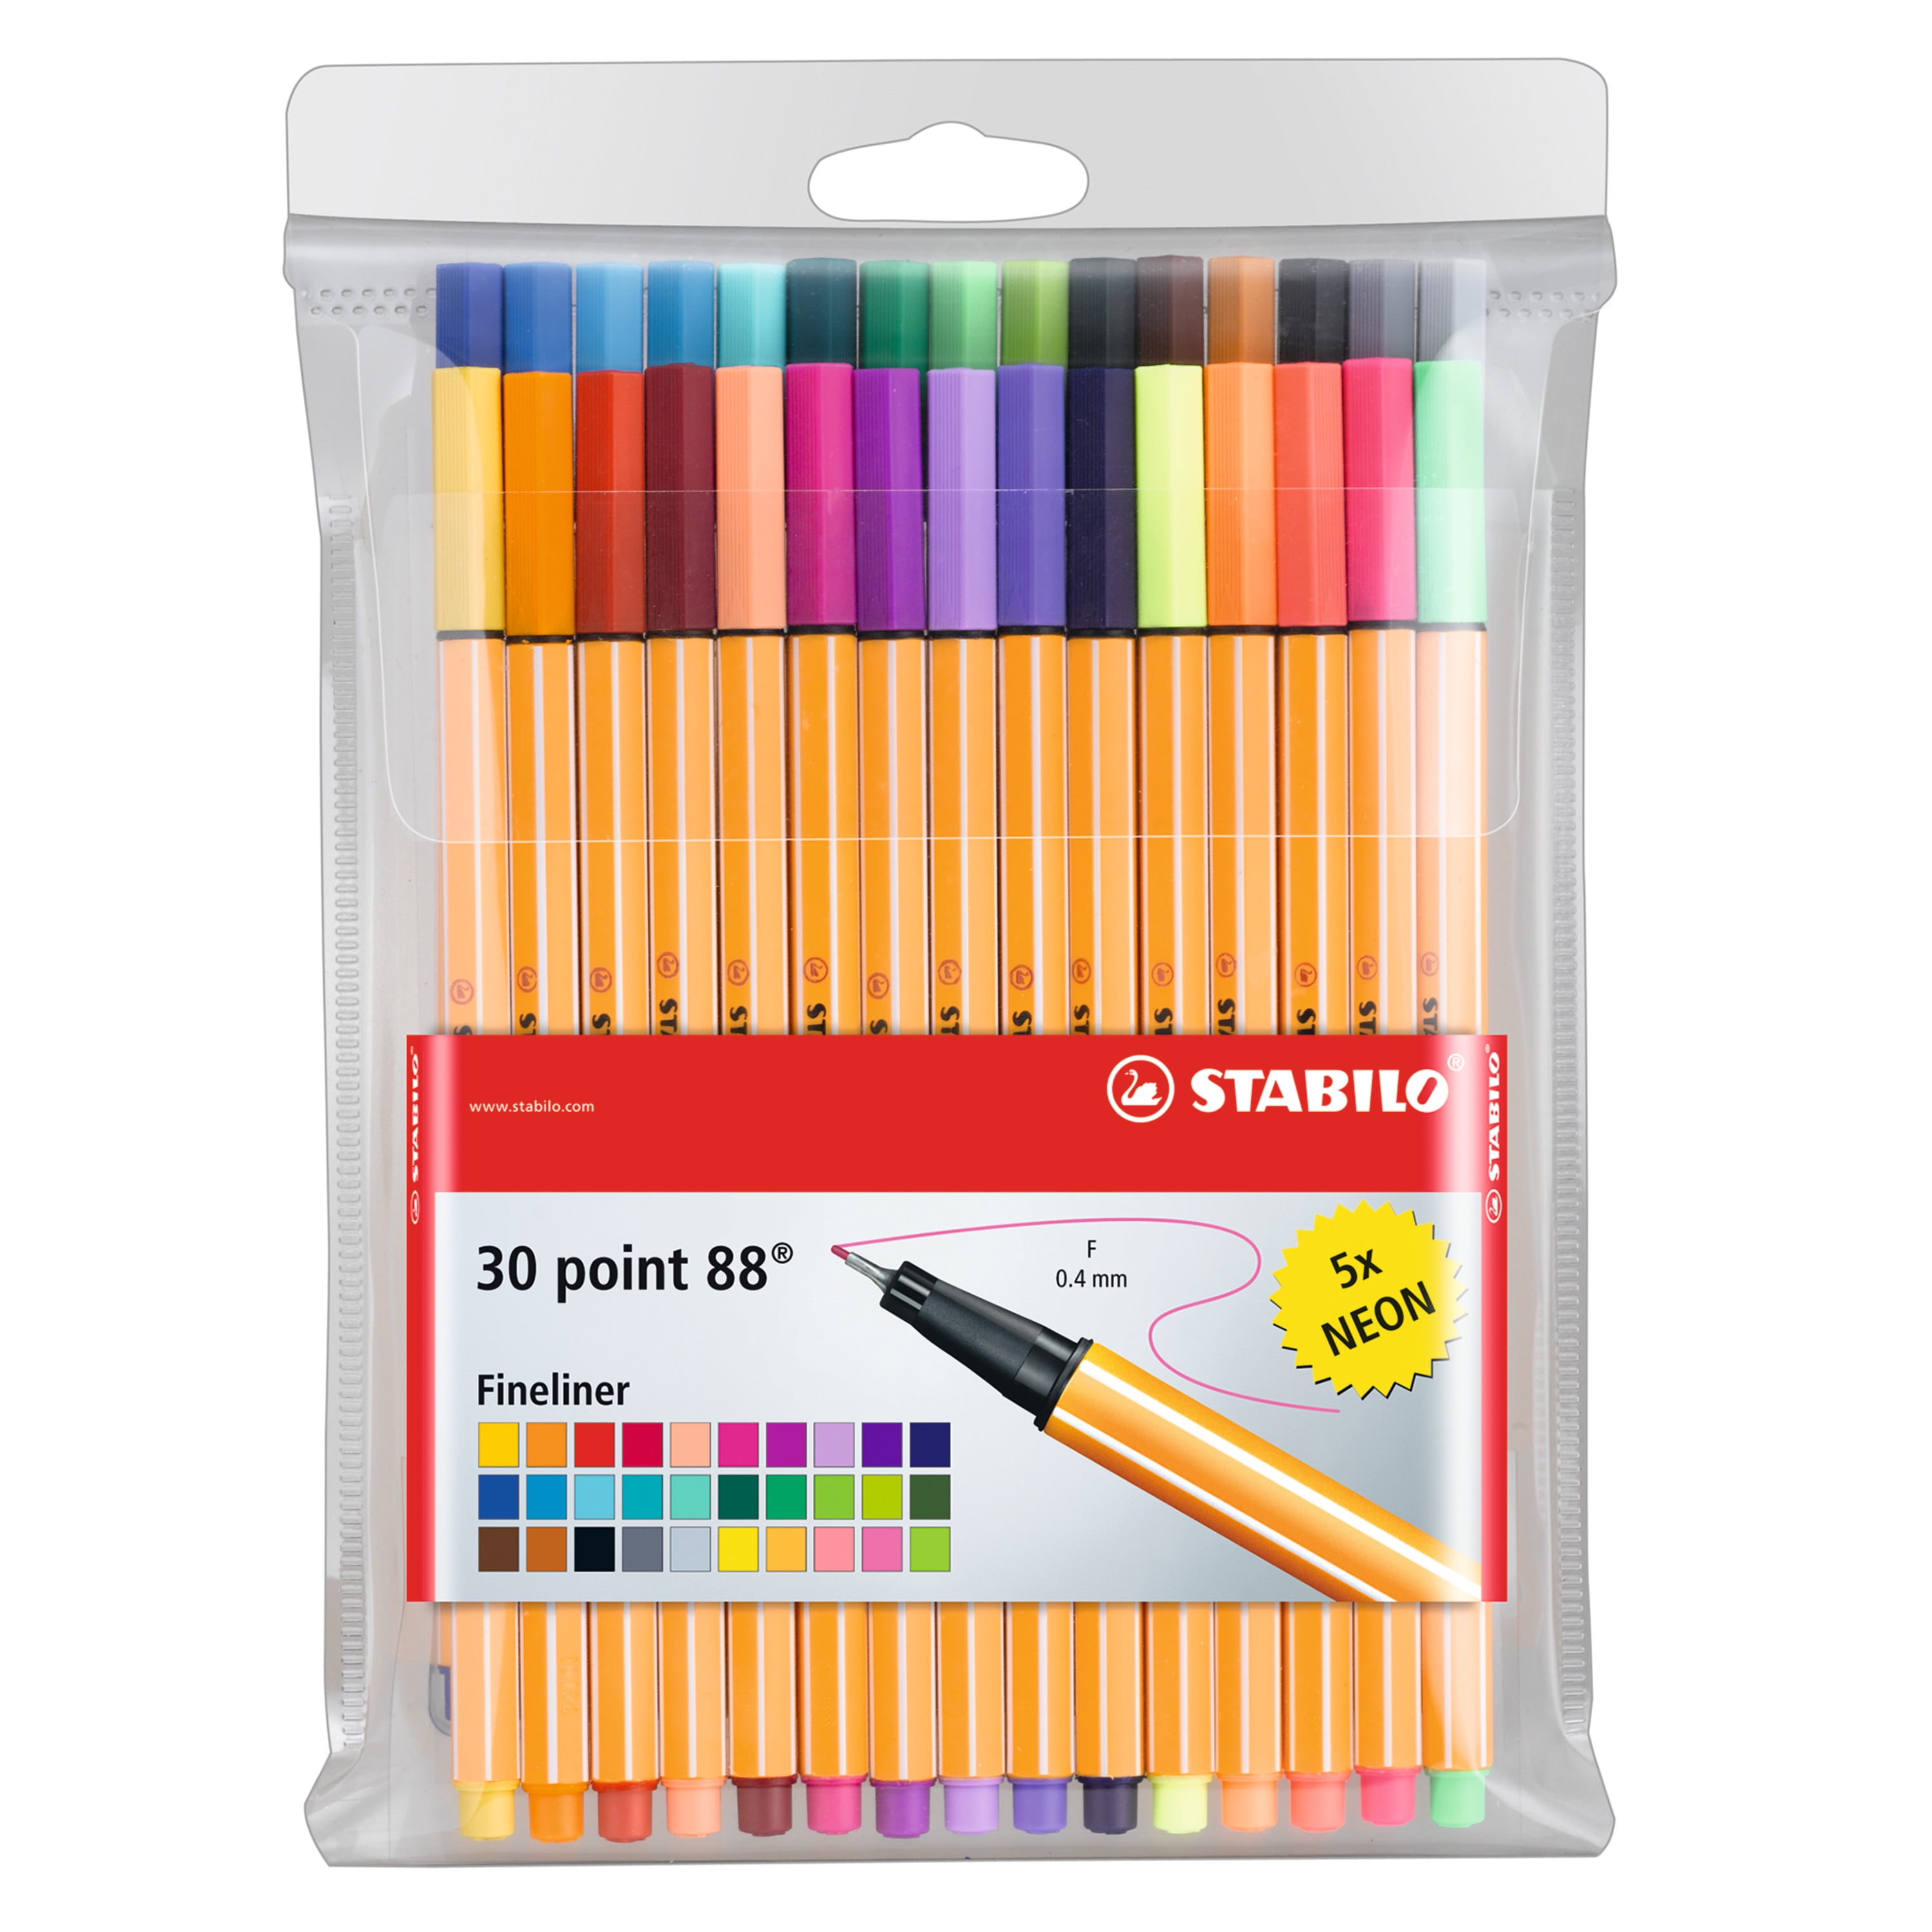 HUGE SET OF 60 COLORING ART MARKERS Fineliner Color Pen Set #1 Best Seller 